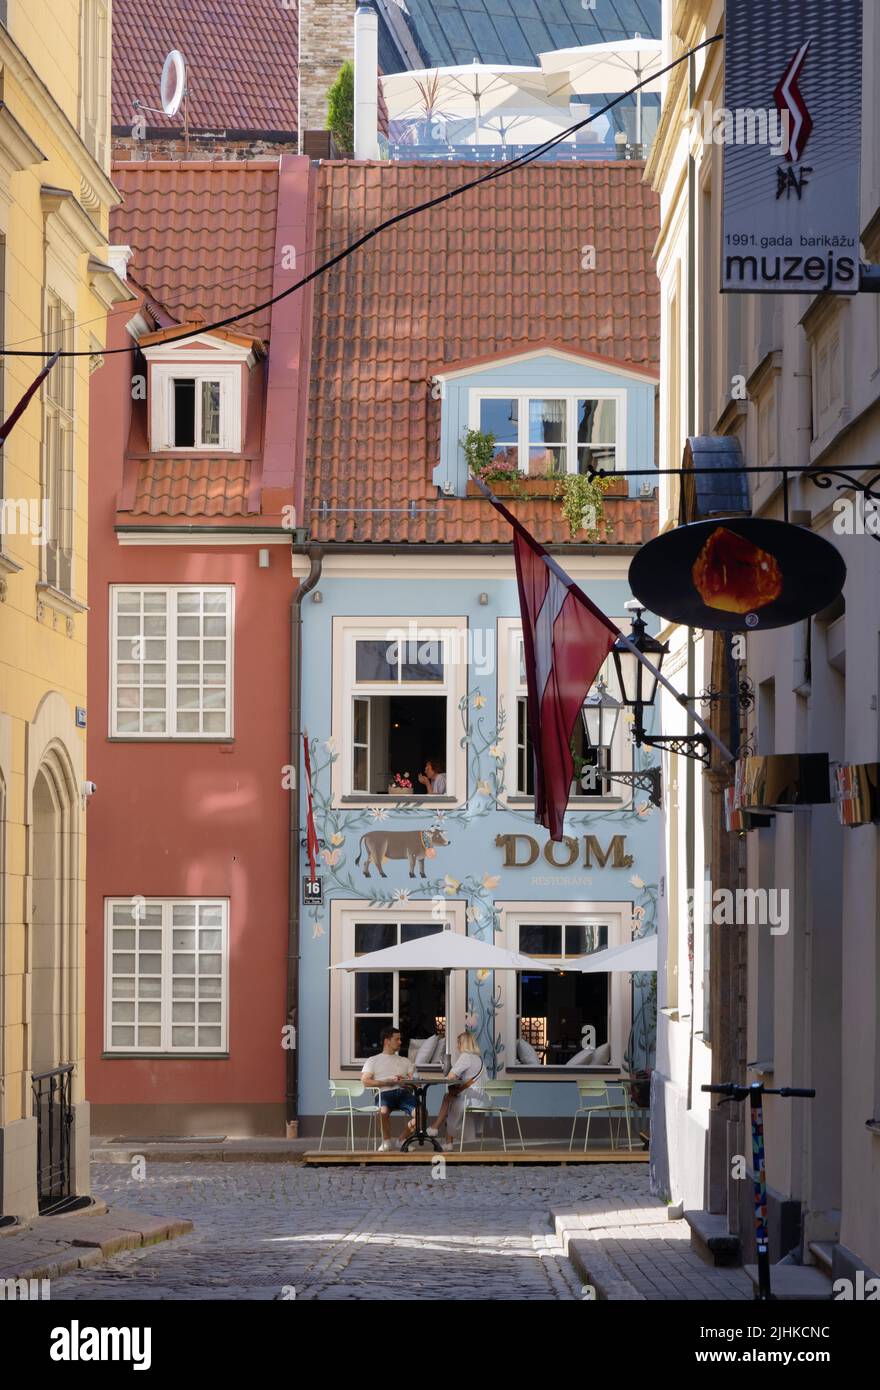 Scène de rue de la vieille ville de Riga - rues étroites médiévales pavées et cafés en été, Riga Lettonie Europe. Riga voyage. Banque D'Images